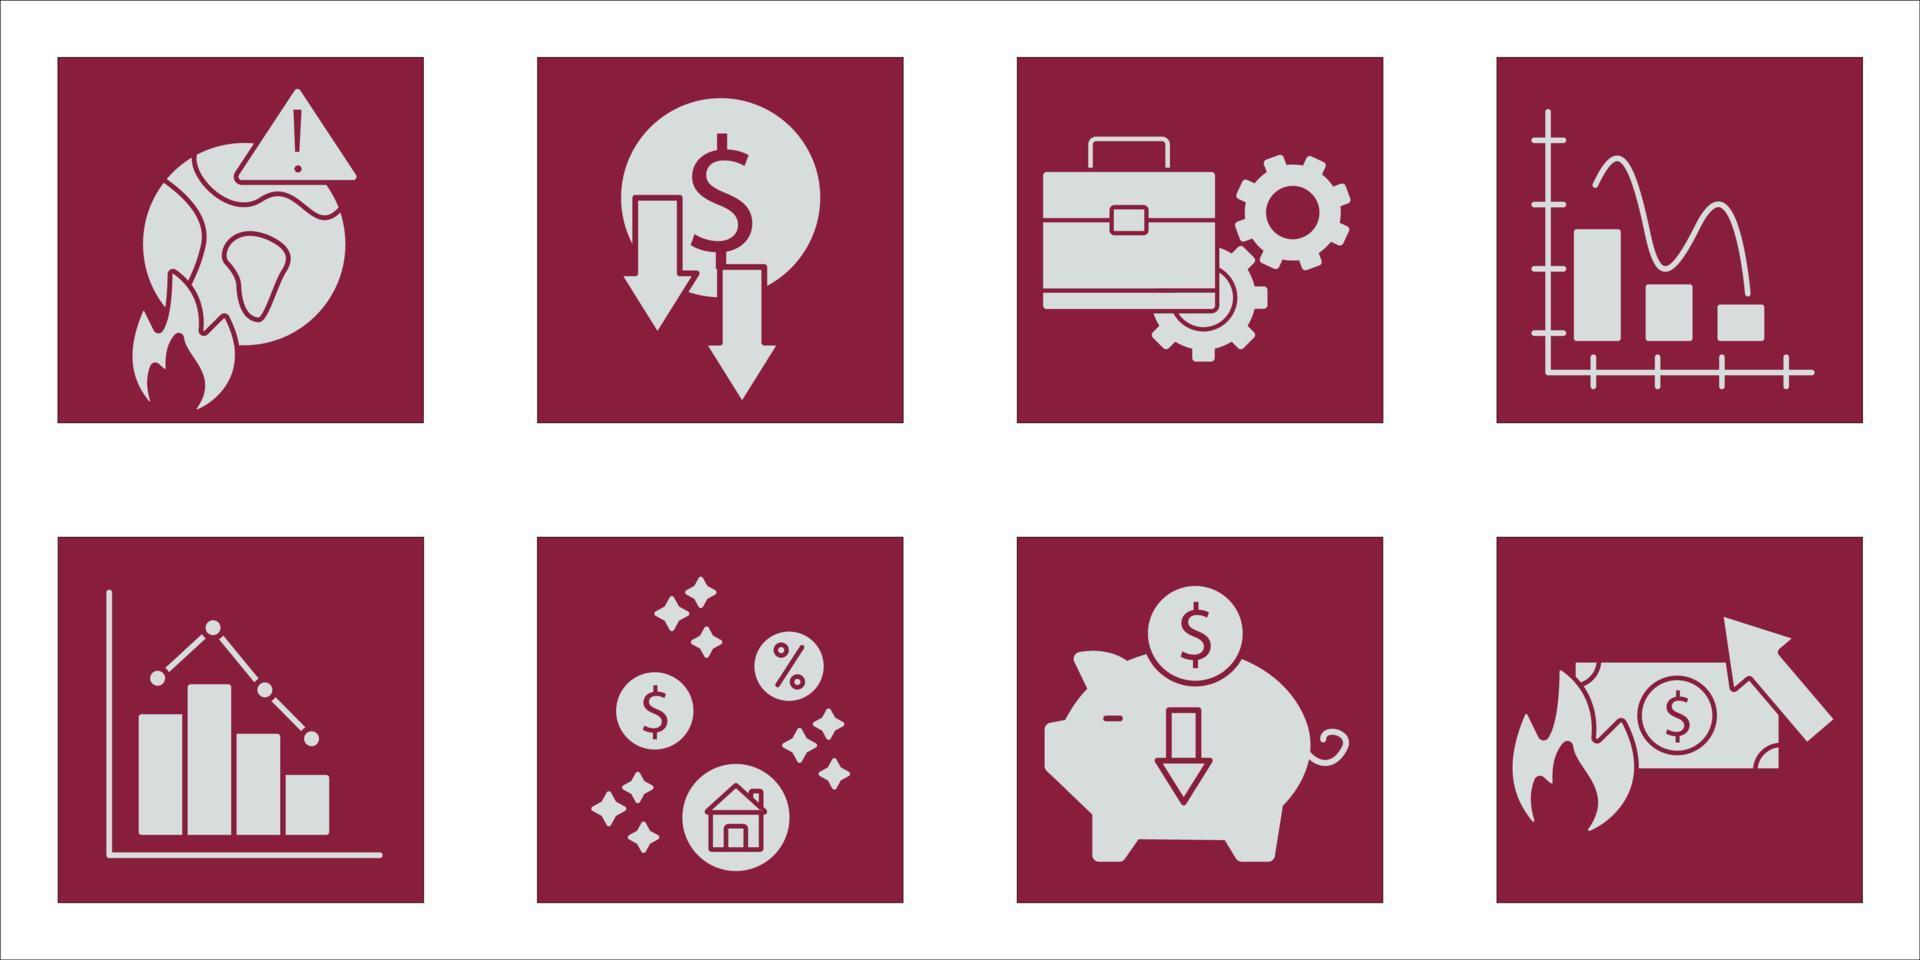 economic crisis icons set color . economic crisis pack symbol vector elements for infographic web